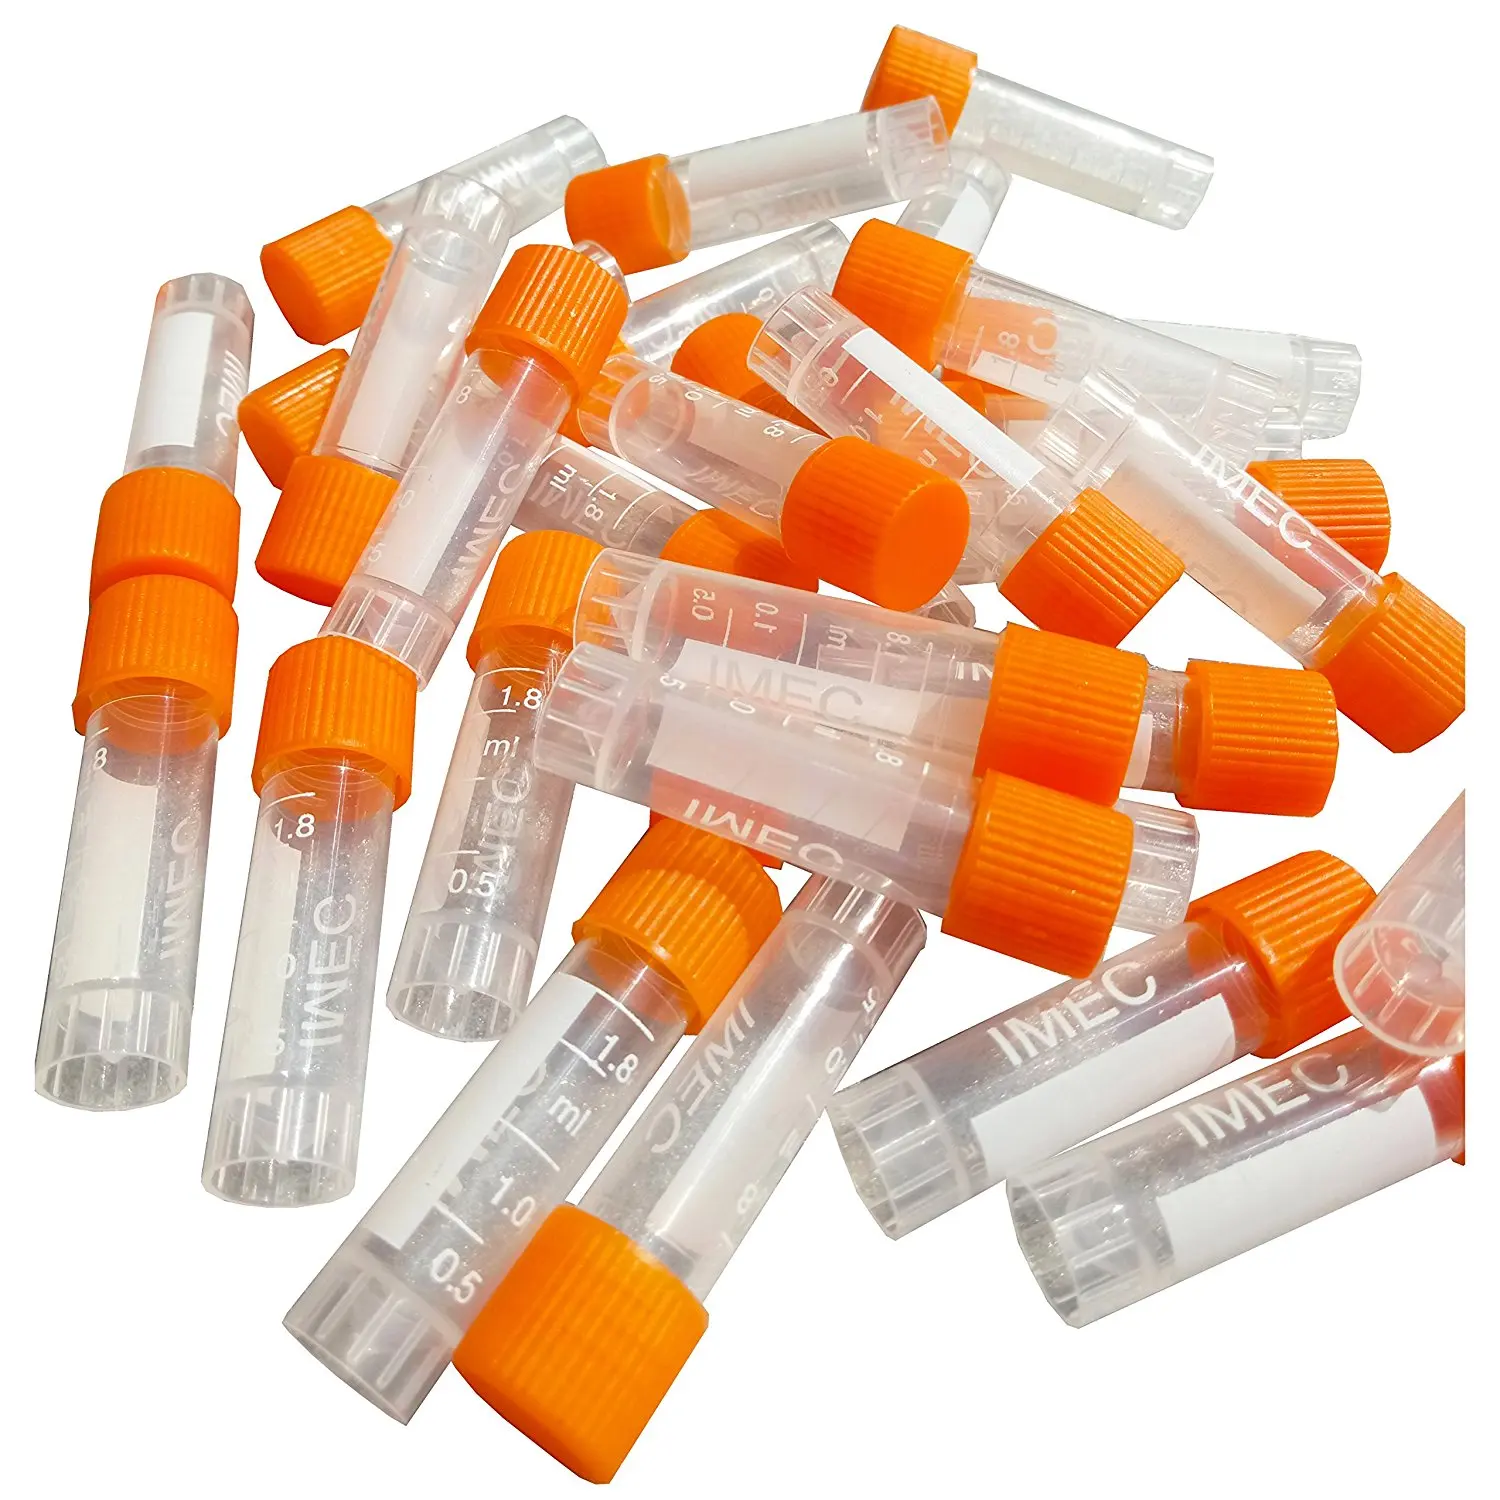 Пластик Пробирки пробирки 1.8 мл лаборатории трубы(различных цветов)(оранжевый